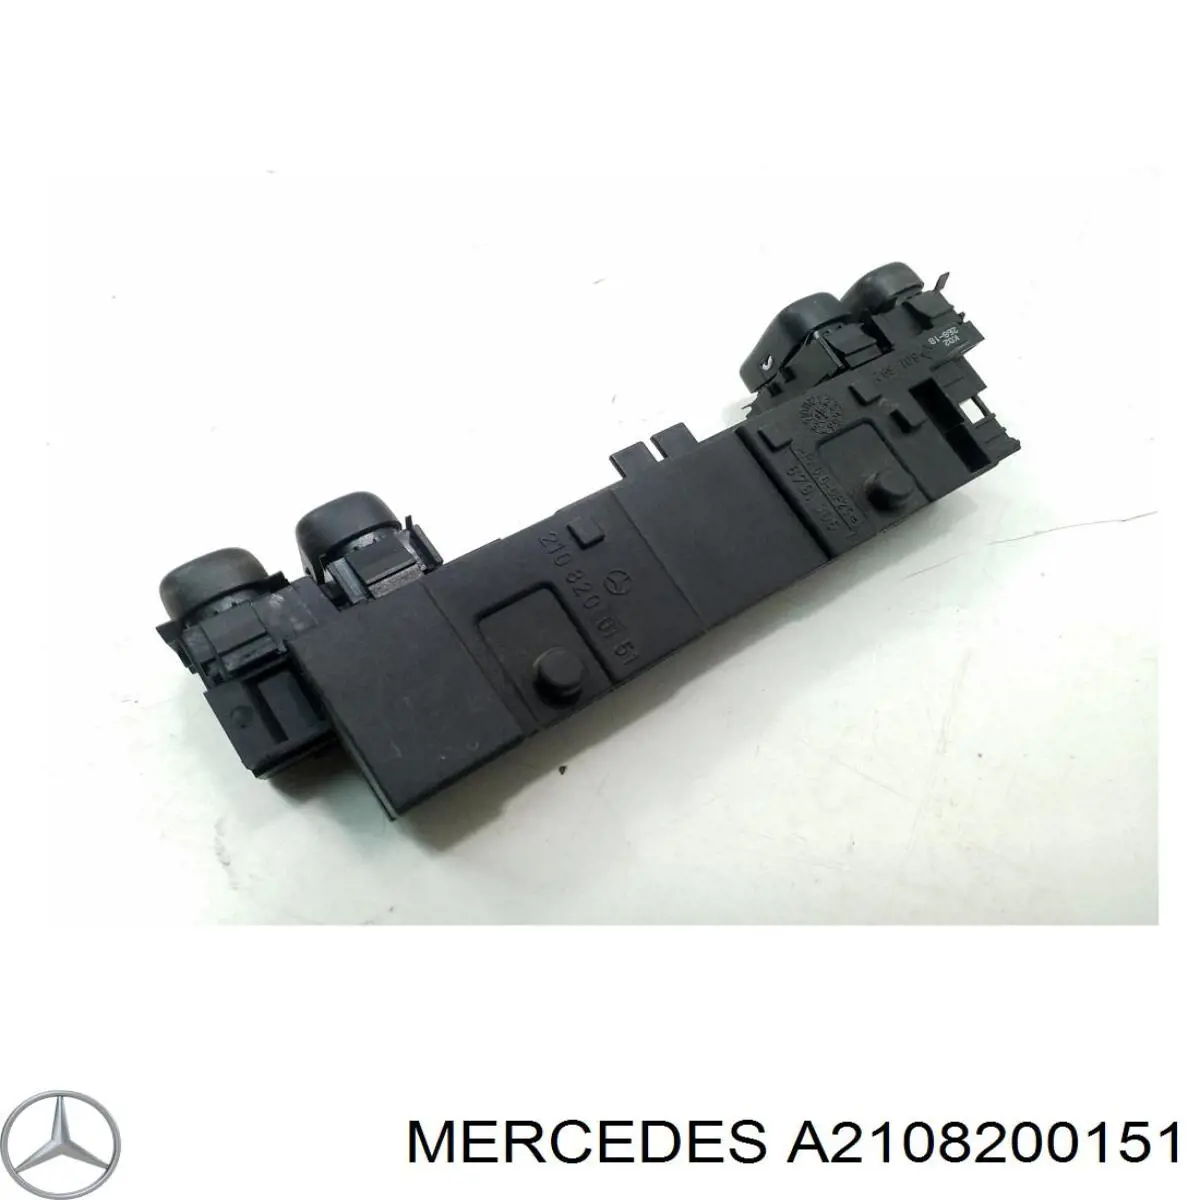 A2108200151 Mercedes boton de encendido de calefaccion del asiento